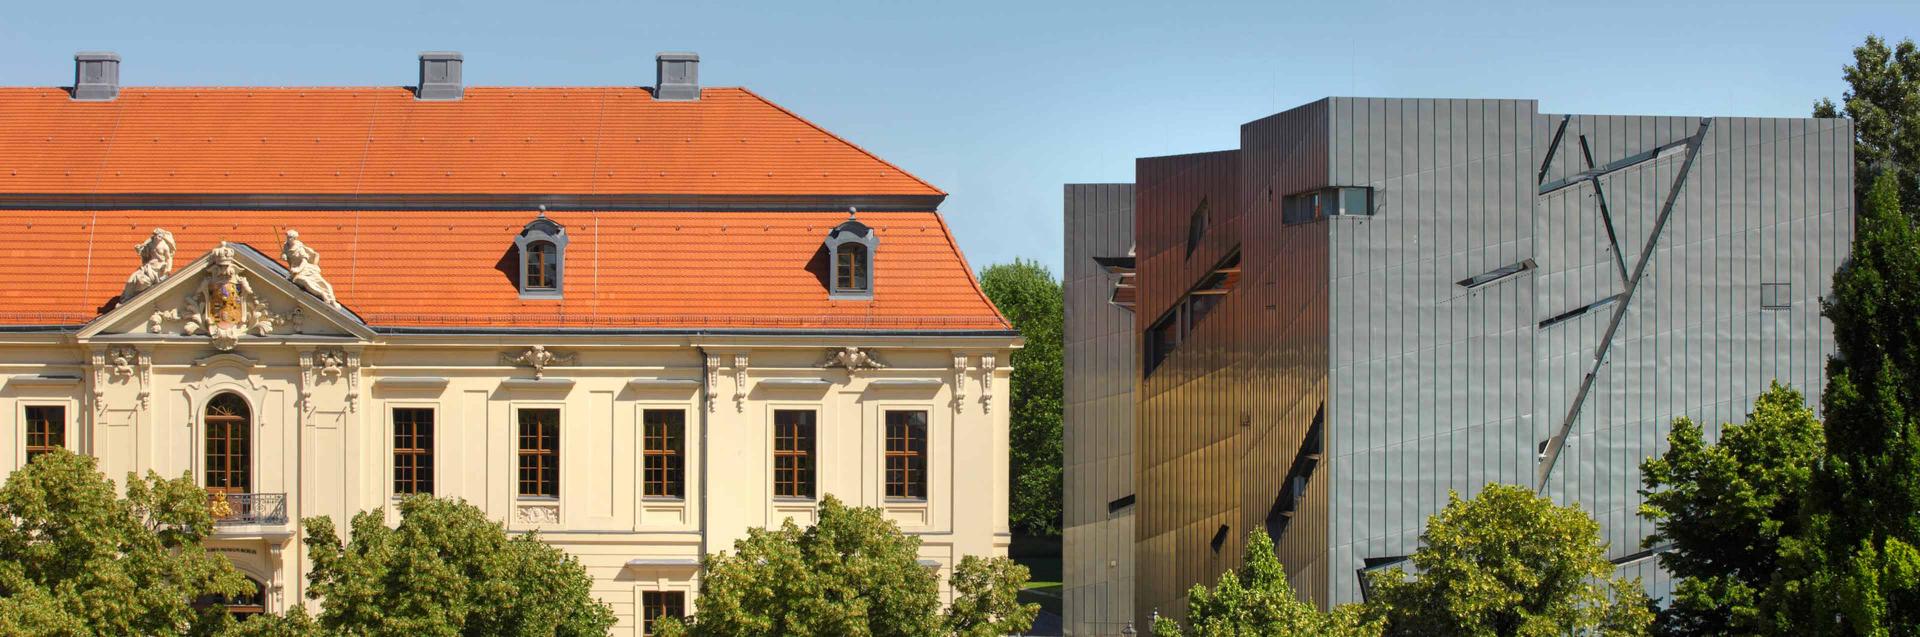 Blick von der Straße auf das Jüdische Museum Berlin: die Fassade des barocken Altbaus und daneben der Libeskind-Bau aus Titanzink